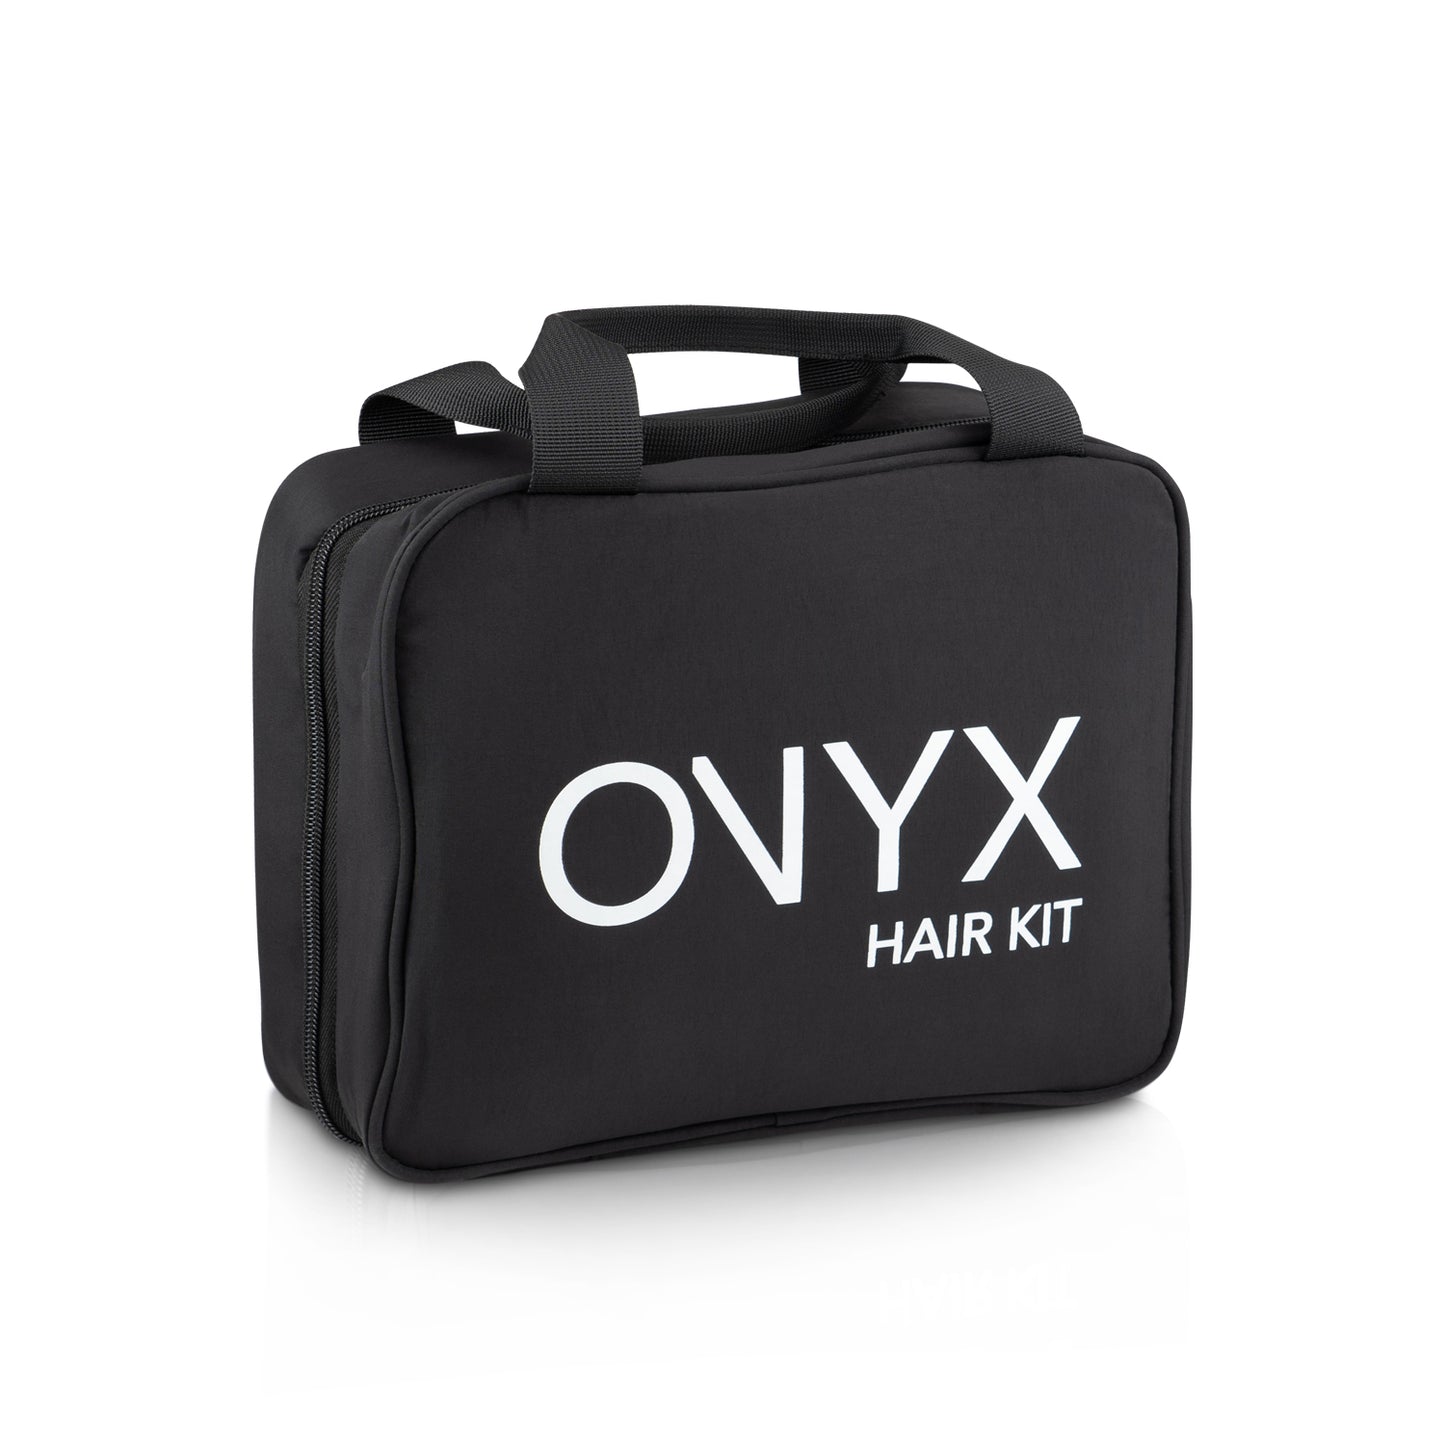 Onyx Hair Care Kit